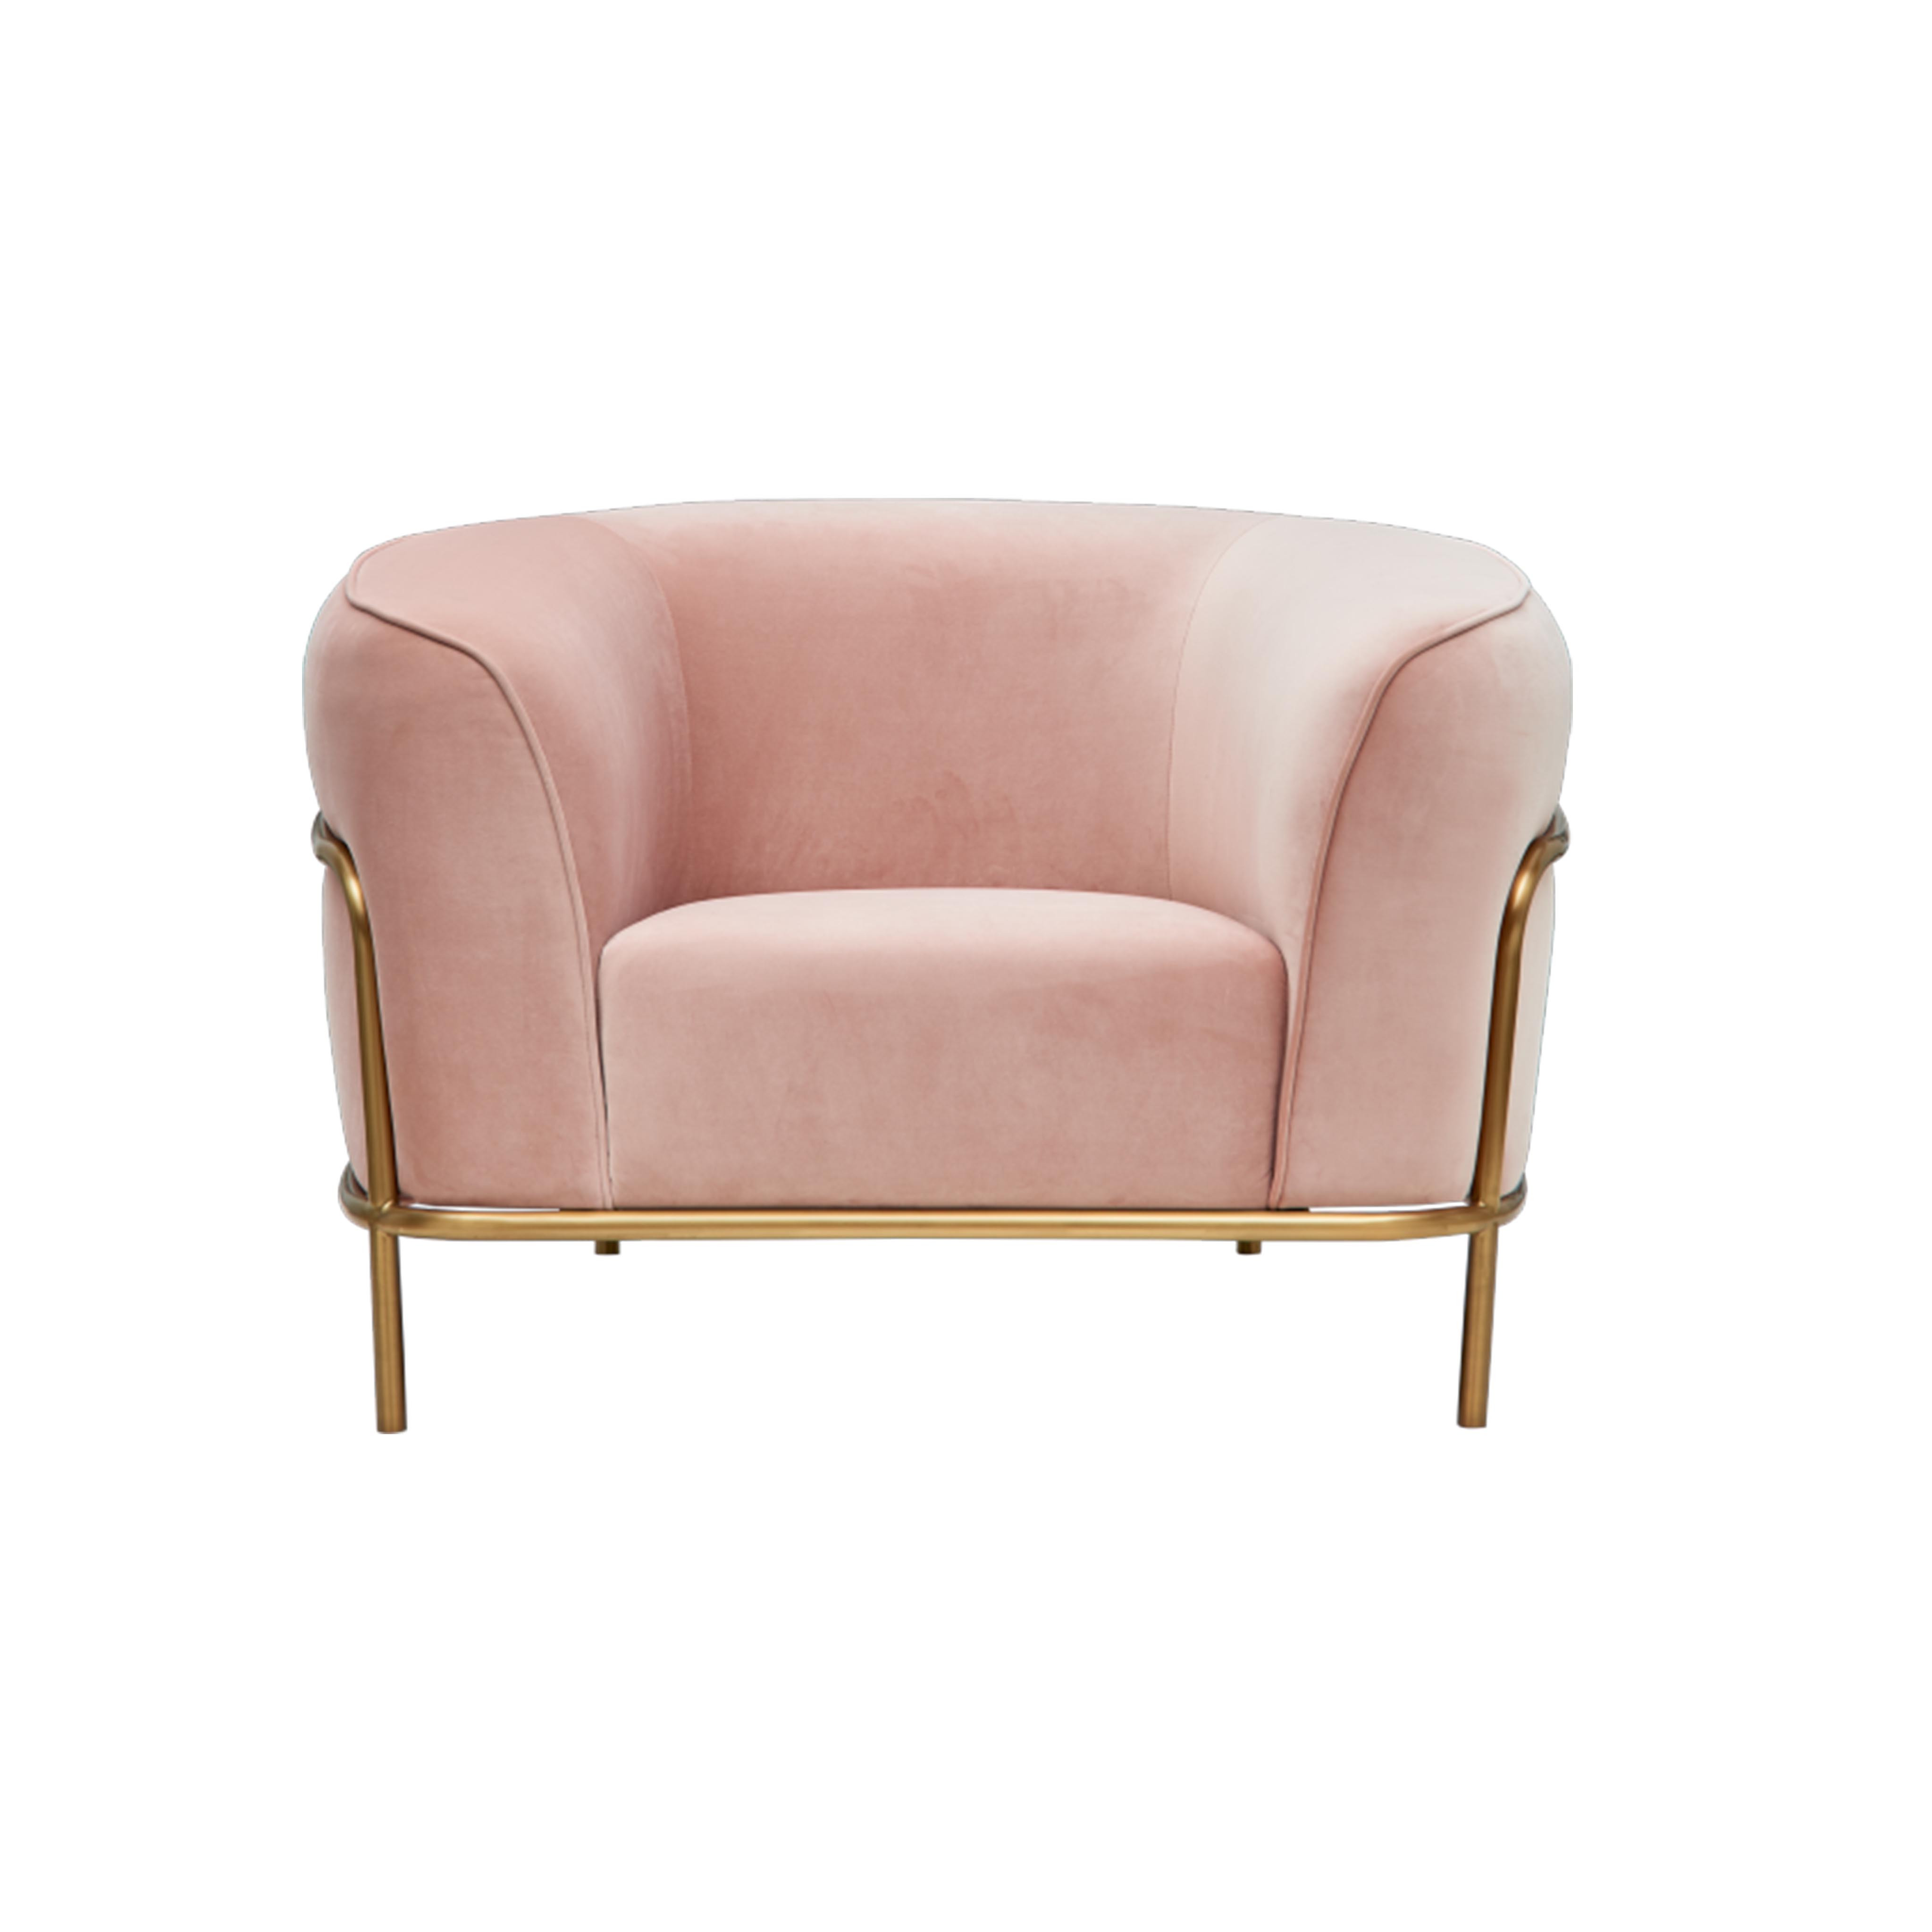 Luxus ausgefallene Wohnzimmermöbel Gold Rosa Samt Lounge Sofa Stühle Goldbeine Wohnzimmer Möbel